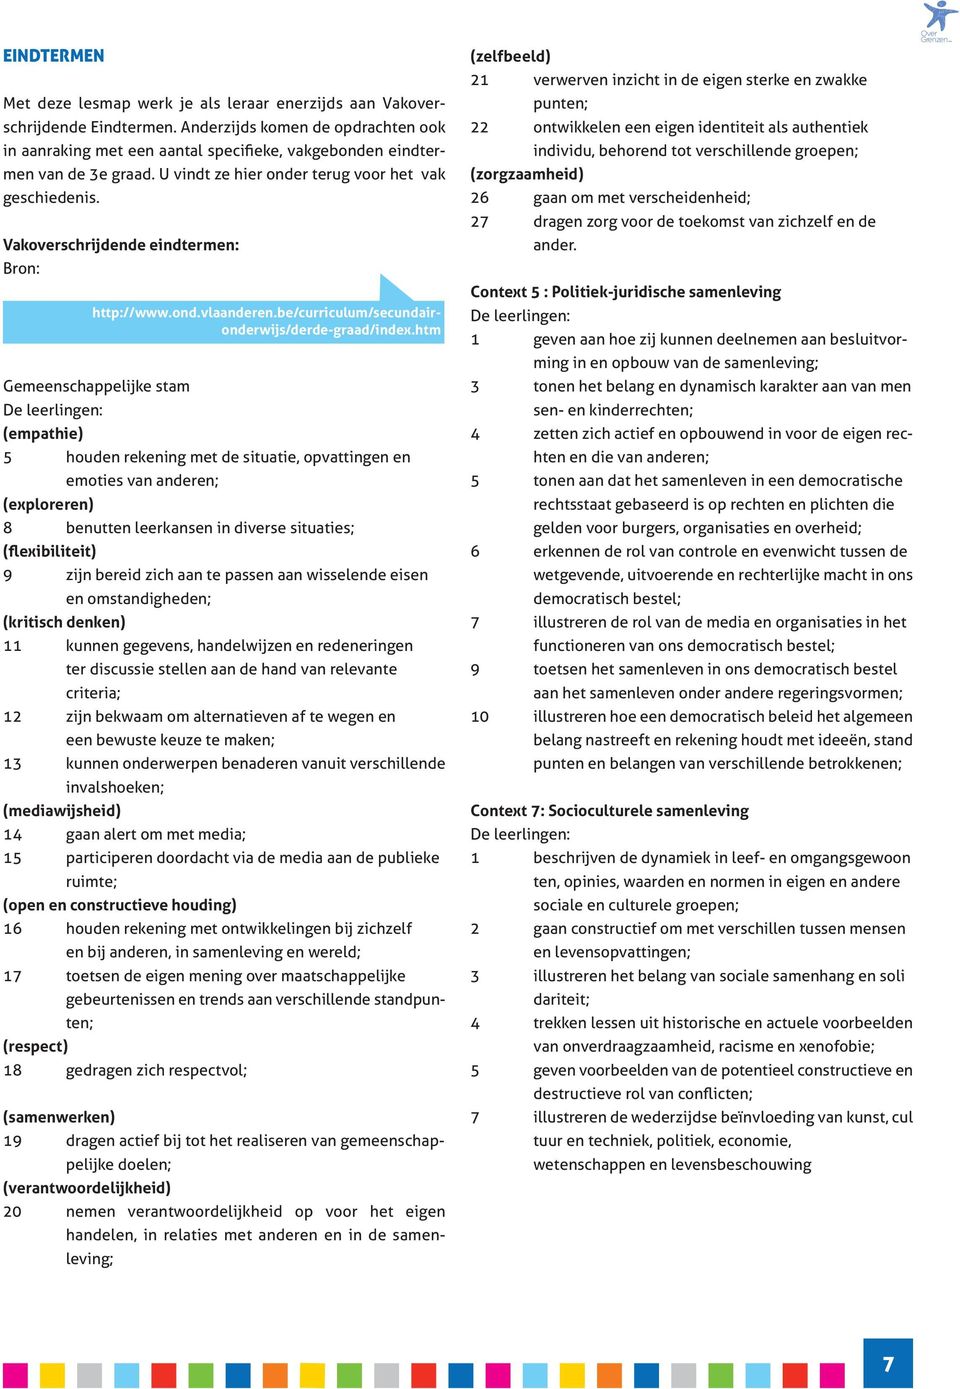 Vakoverschrijdende eindtermen: Bron: http://www.ond.vlaanderen.be/curriculum/secundaironderwijs/derde-raad/index.